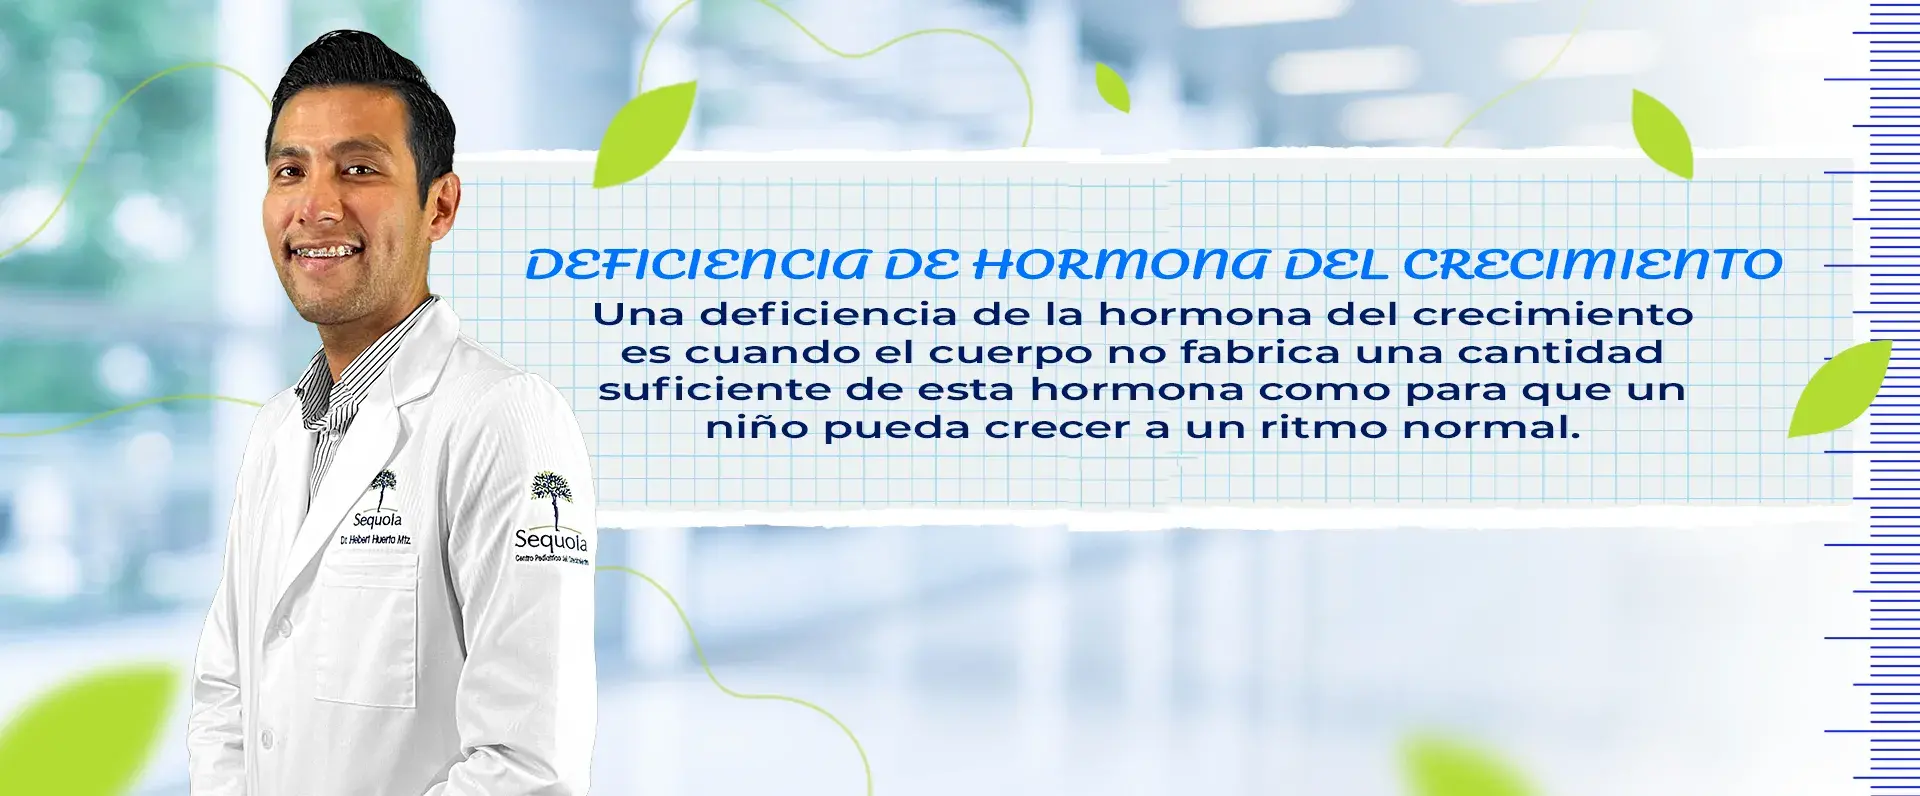 La deficiencia de hormona de crecimiento es cuando no se produce suficiente cantidad.